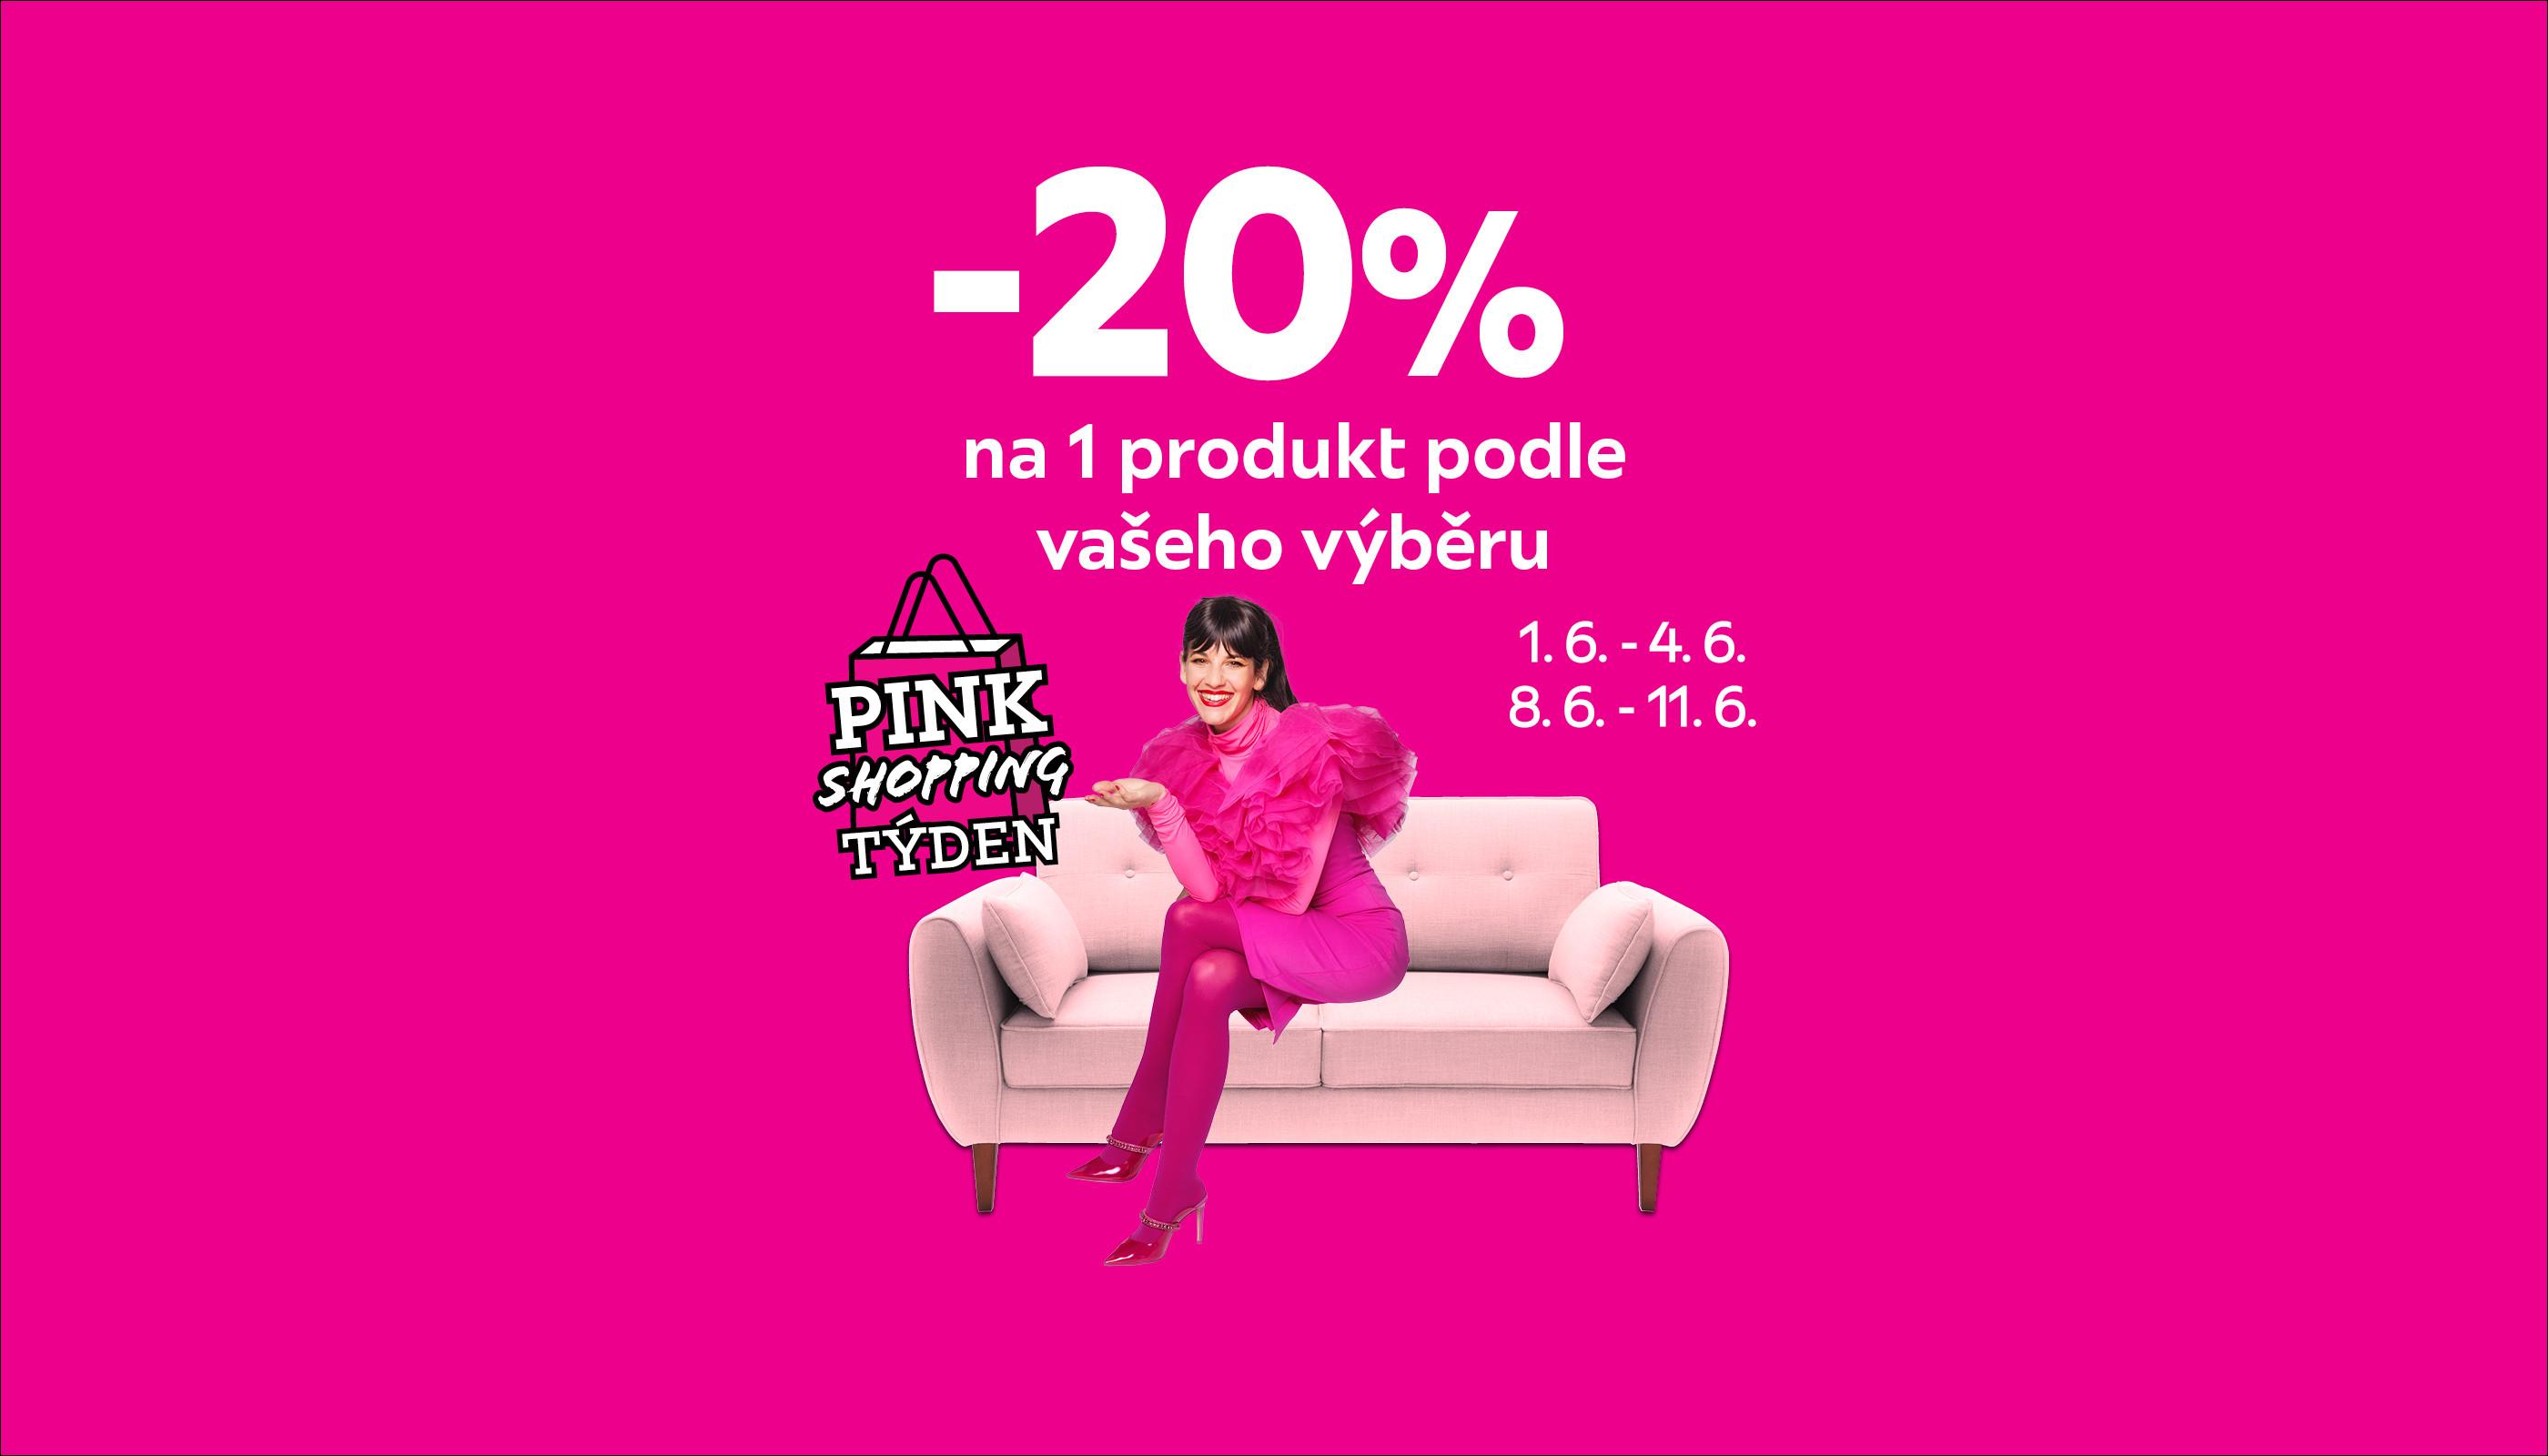 Am-3T22-pink_shopping-cz1.jpg